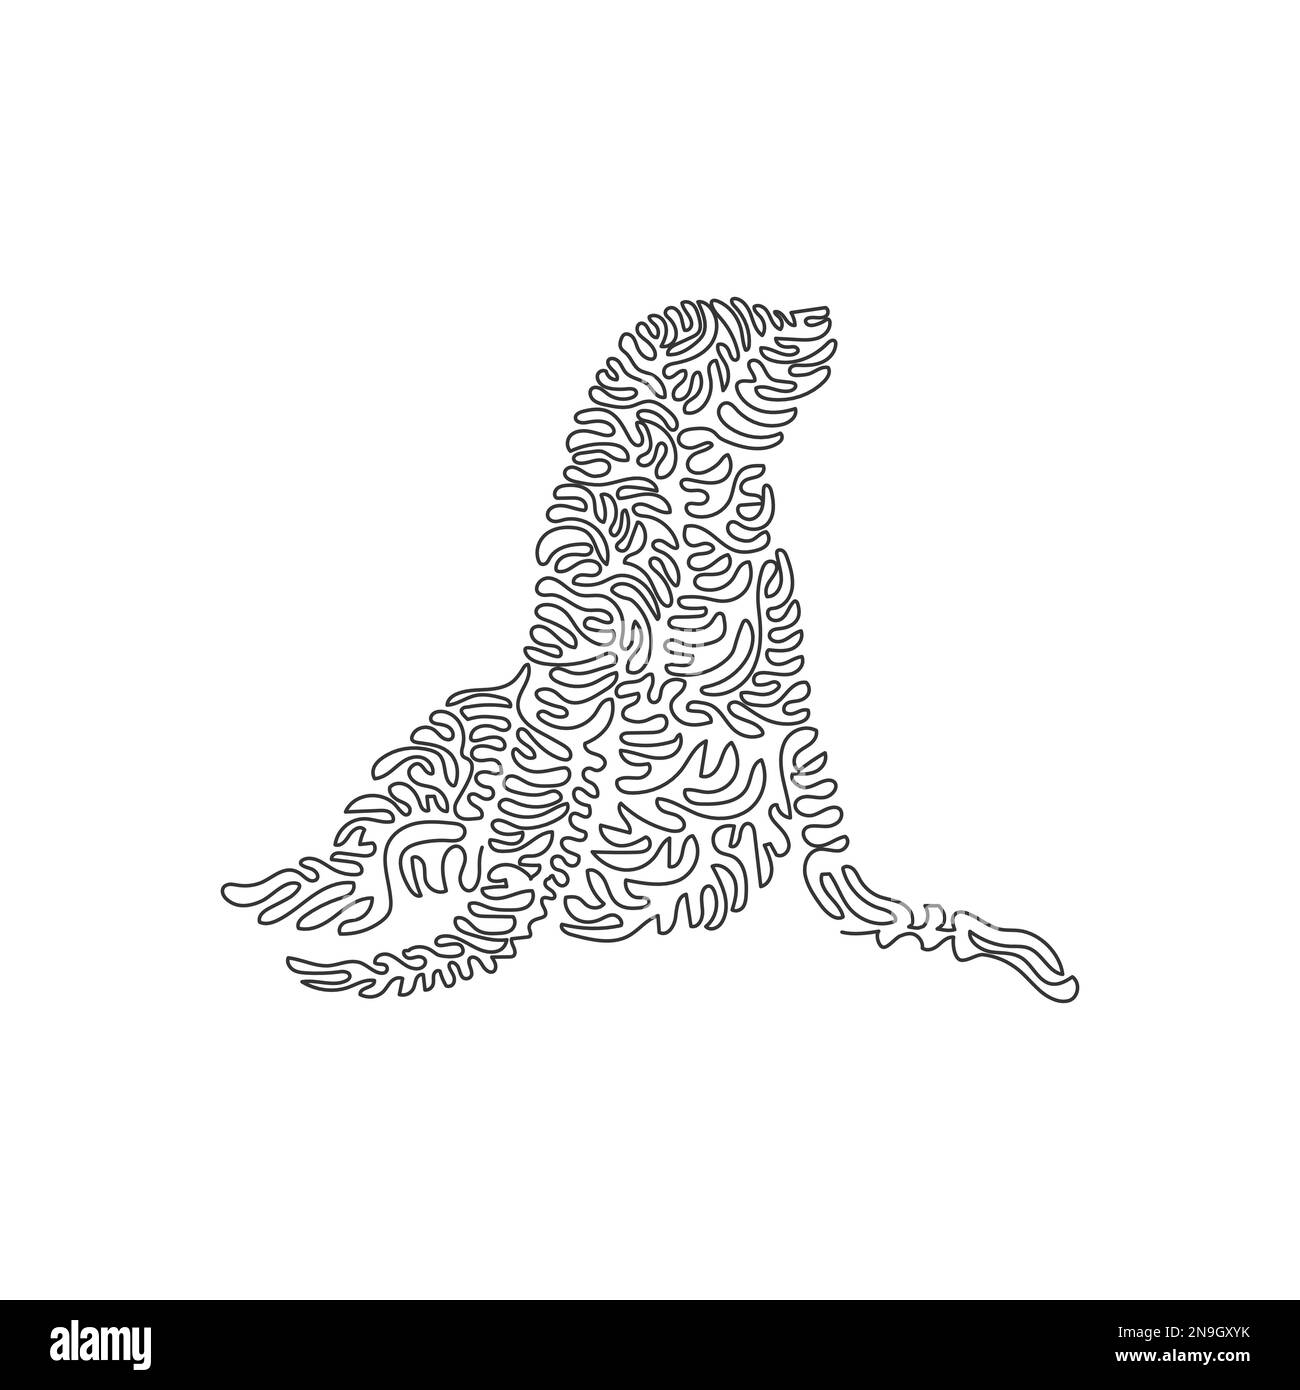 Eine einzelne, lockige Linienzeichnung eines niedlichen Seelöwen abstrakte Kunst. Durchgängige Linienzeichnung als Vektordarstellung von fabelhaften Wassersäugetieren Stock Vektor